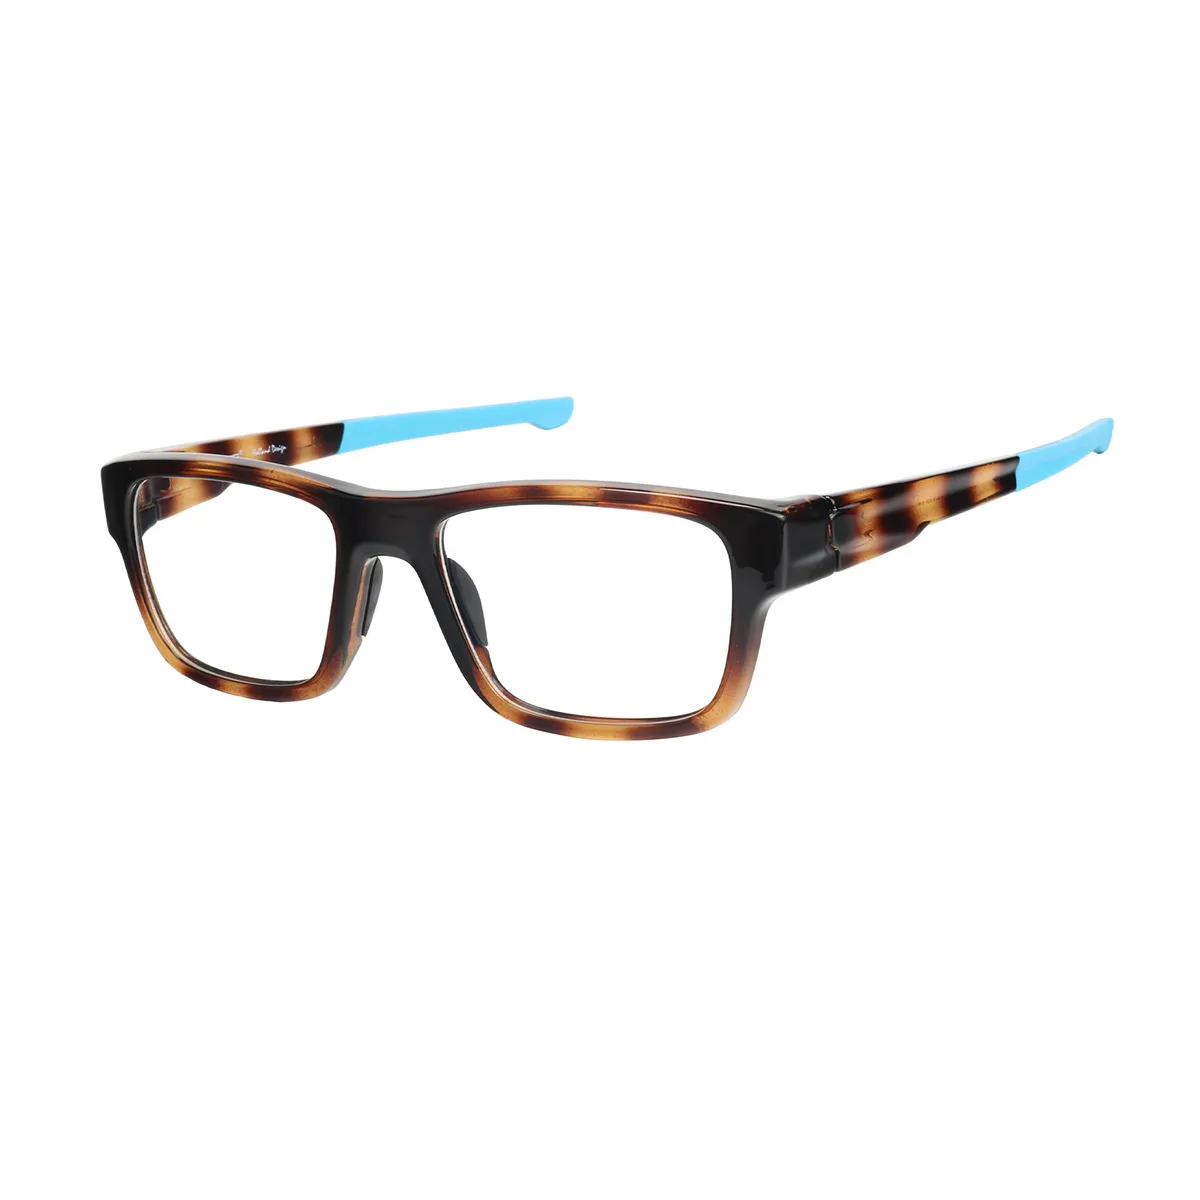 Hawthorne - Rectangle Tortoiseshell-Blue Glasses for Men - EFE